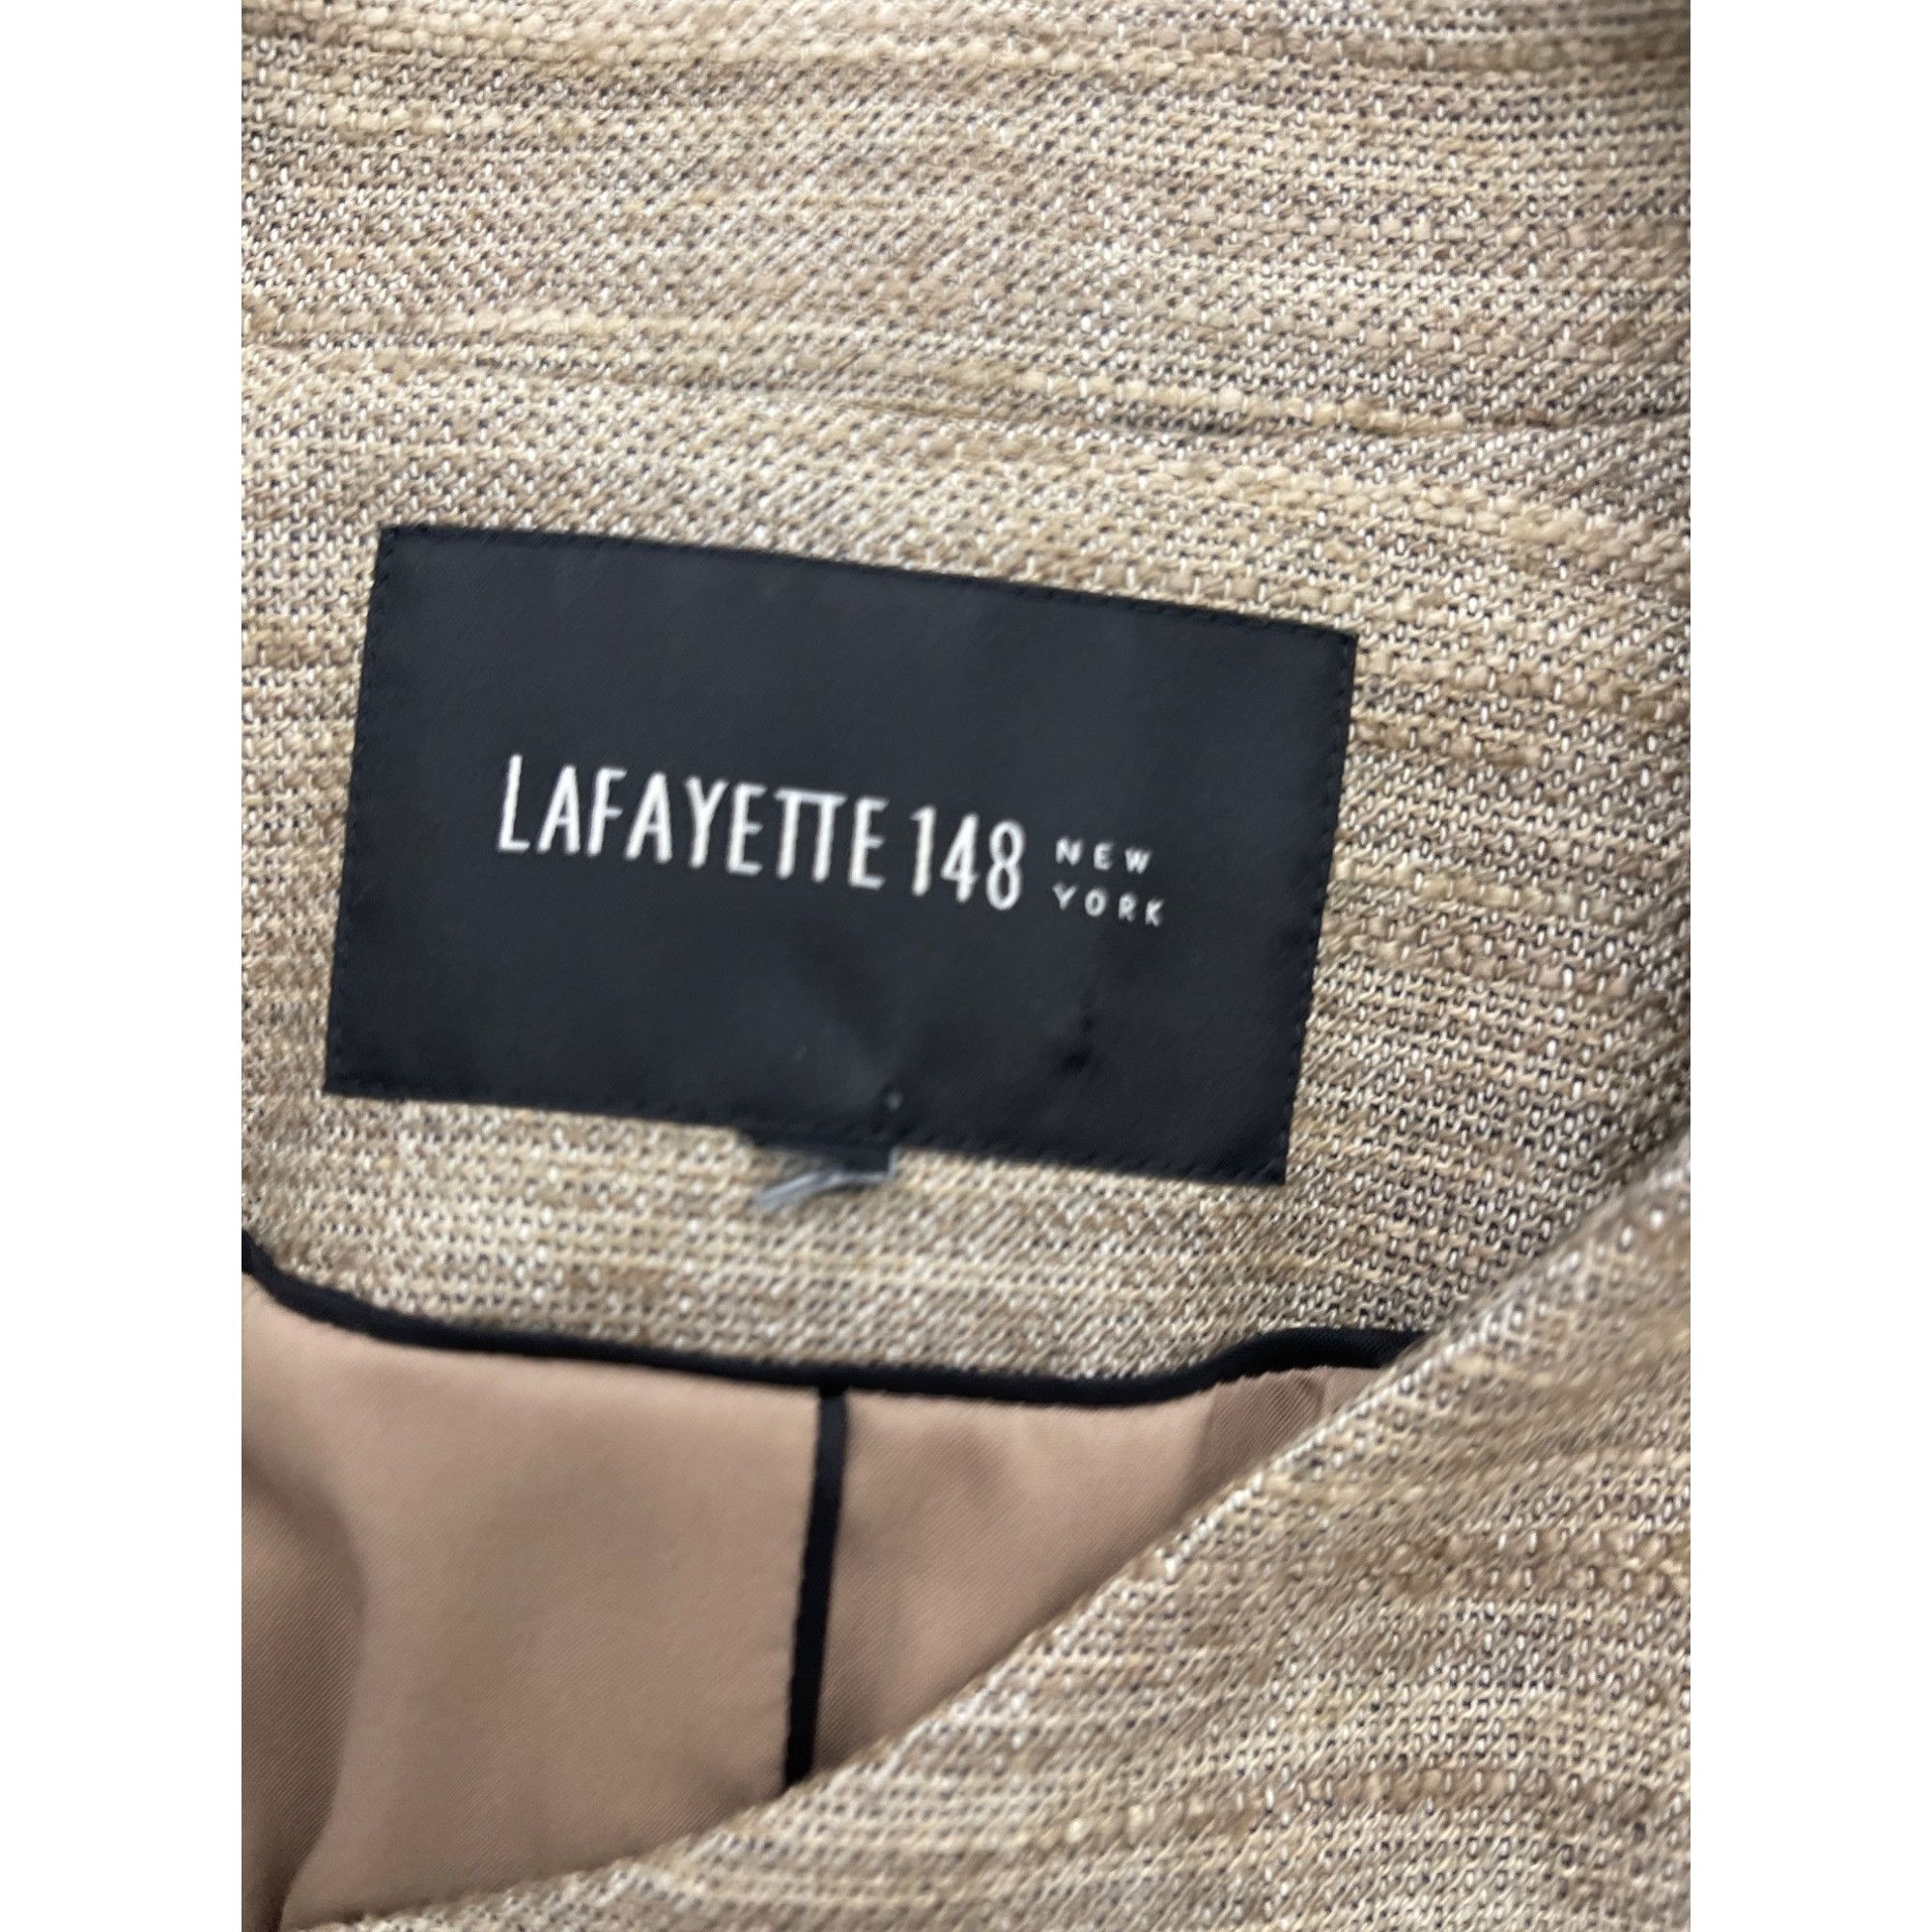 Lafayette 148 Lafayette 148 Tan Linen Blend Asymmetric Neckline Blazer 10 Size L / US 10 / IT 46 - 7 Thumbnail